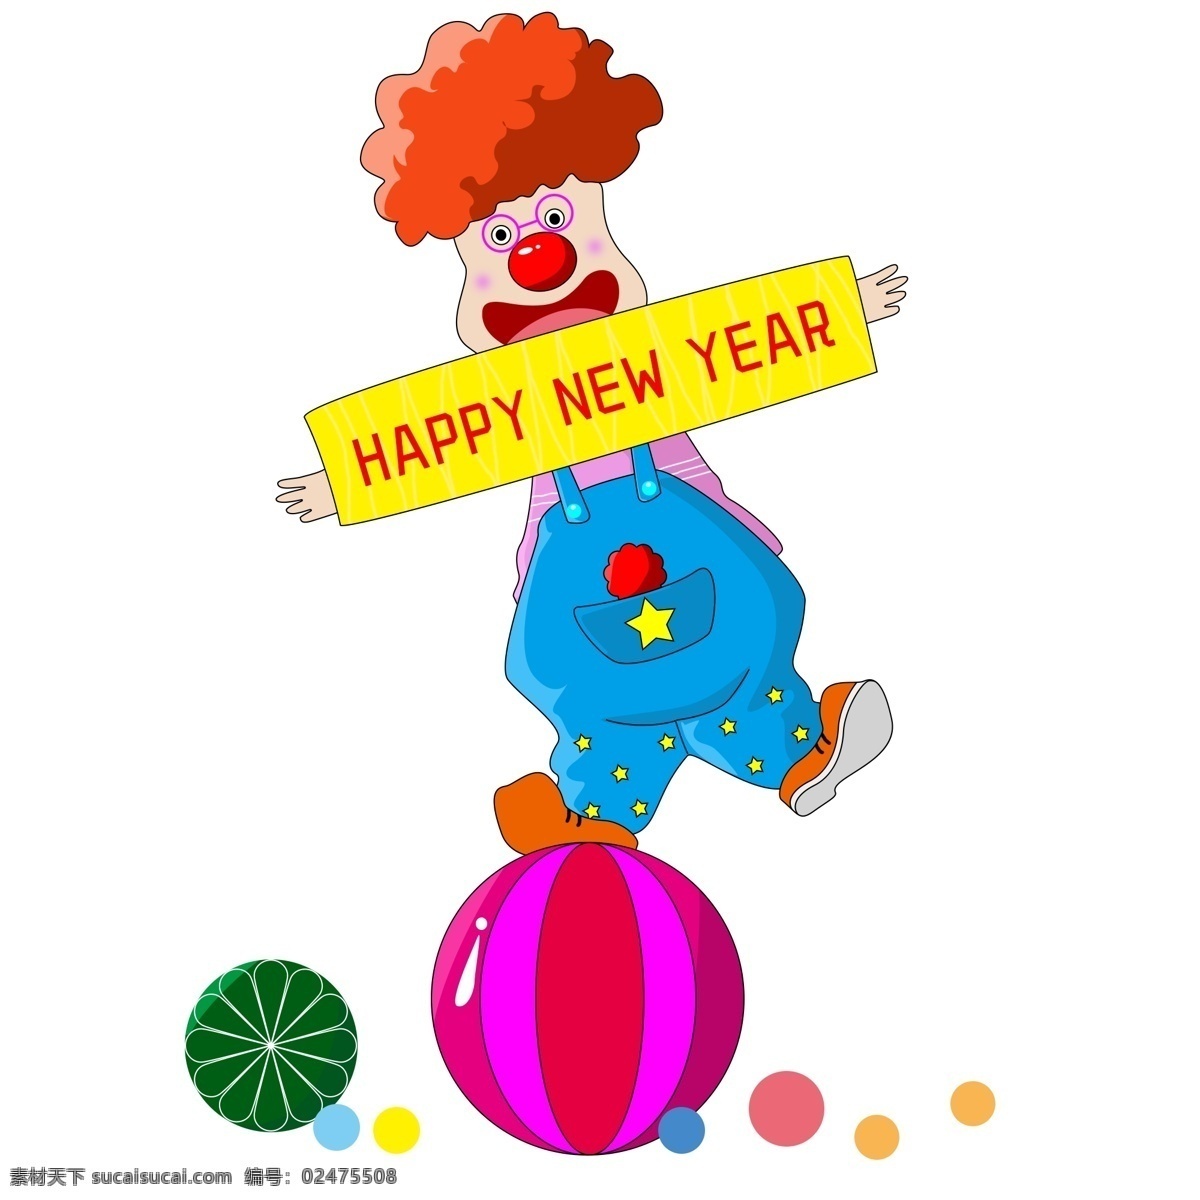 新年 快乐 开心 小丑 新年快乐 站在球上小丑 彩色球 happy new year 横幅 卷发 眼镜 气球 背带裤